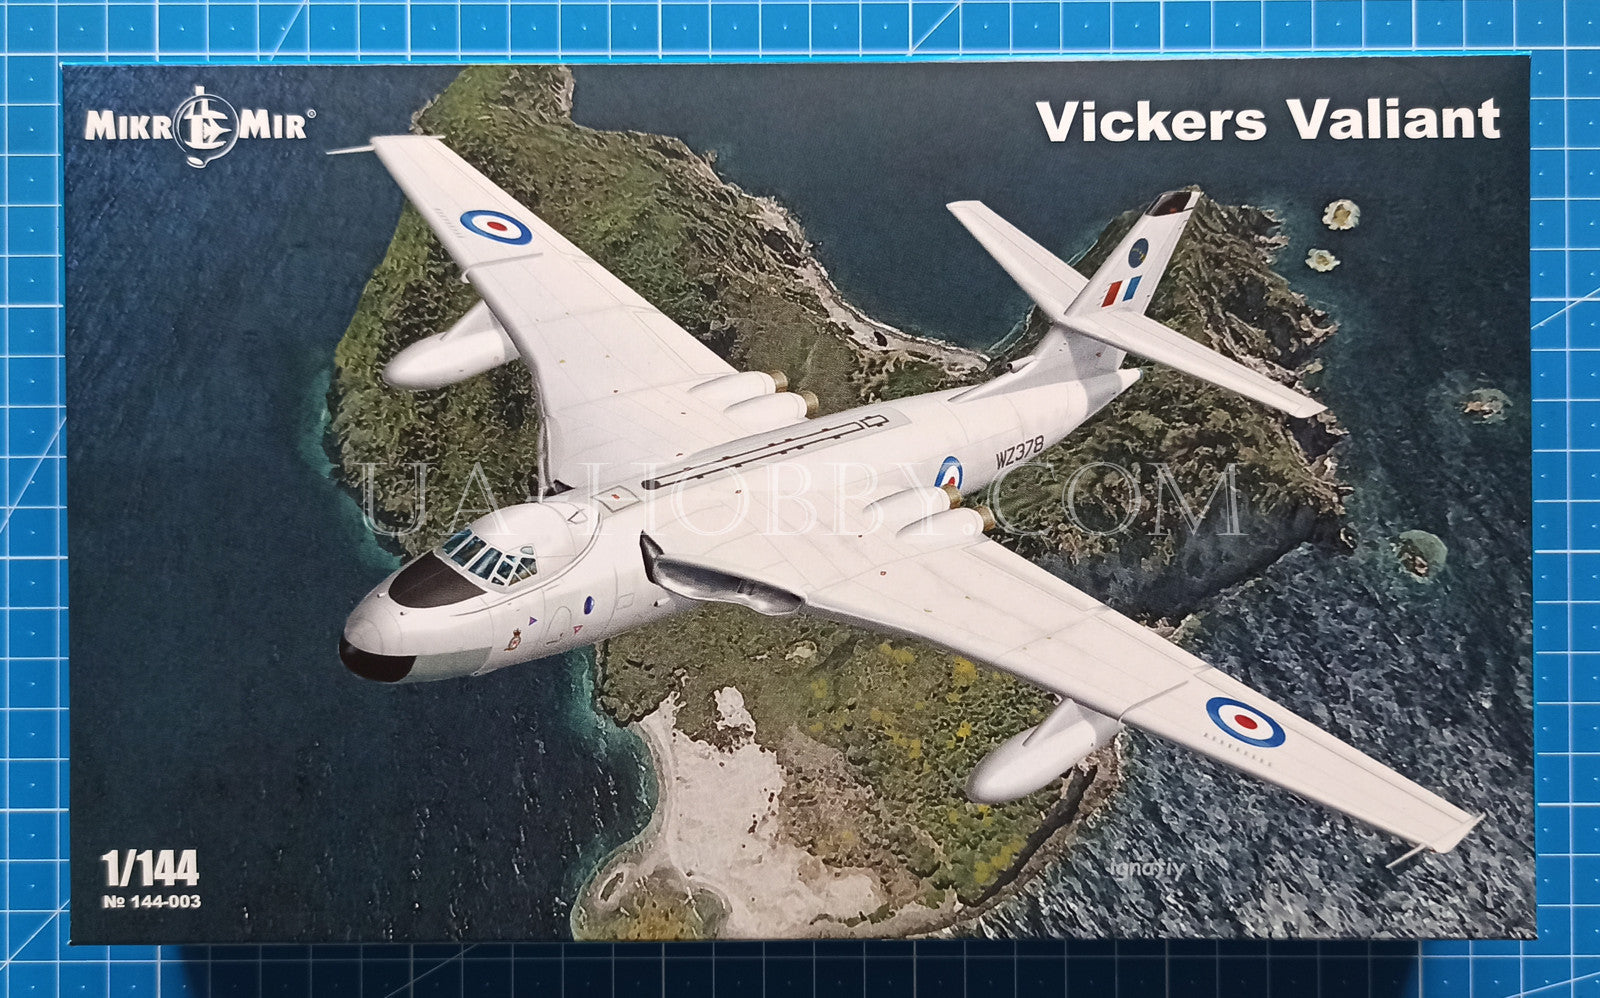 1/144 Vickers Valiant. MikroMir 144-003